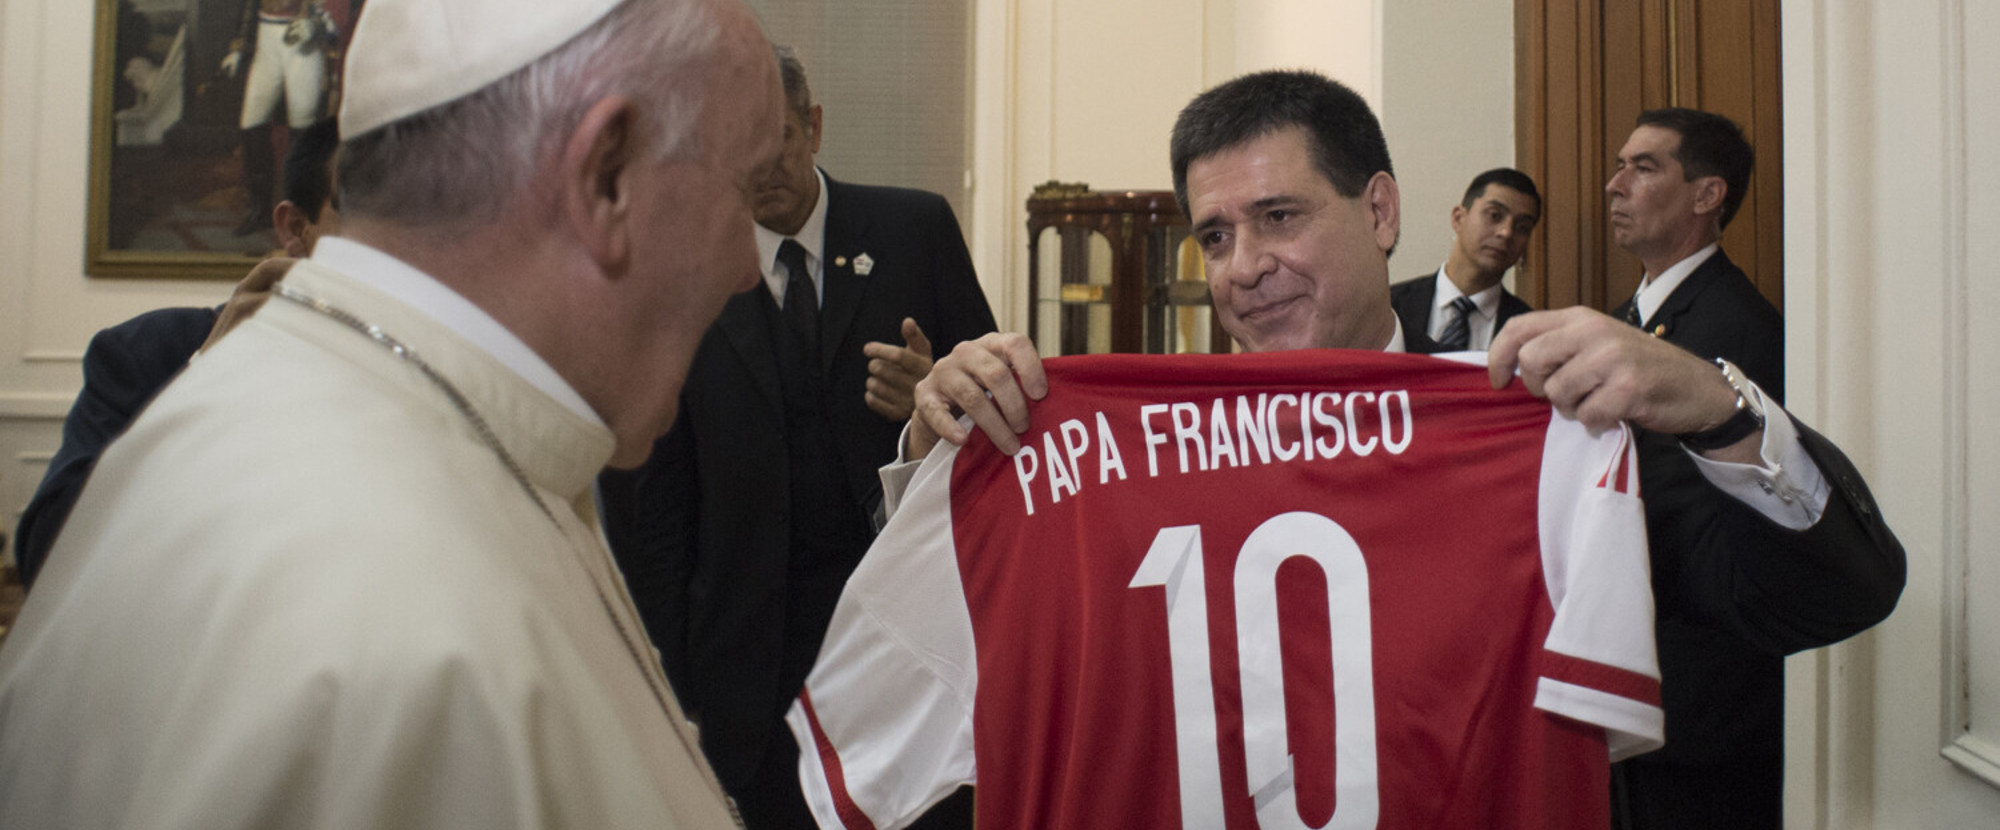 Der paraguayanische Staatpräsident Horacio Cartes schenkt Papst Franziskus ein Fussballtrikot mit seinem Namen am 10. Juli 2015 in Asunción, Paraguay.